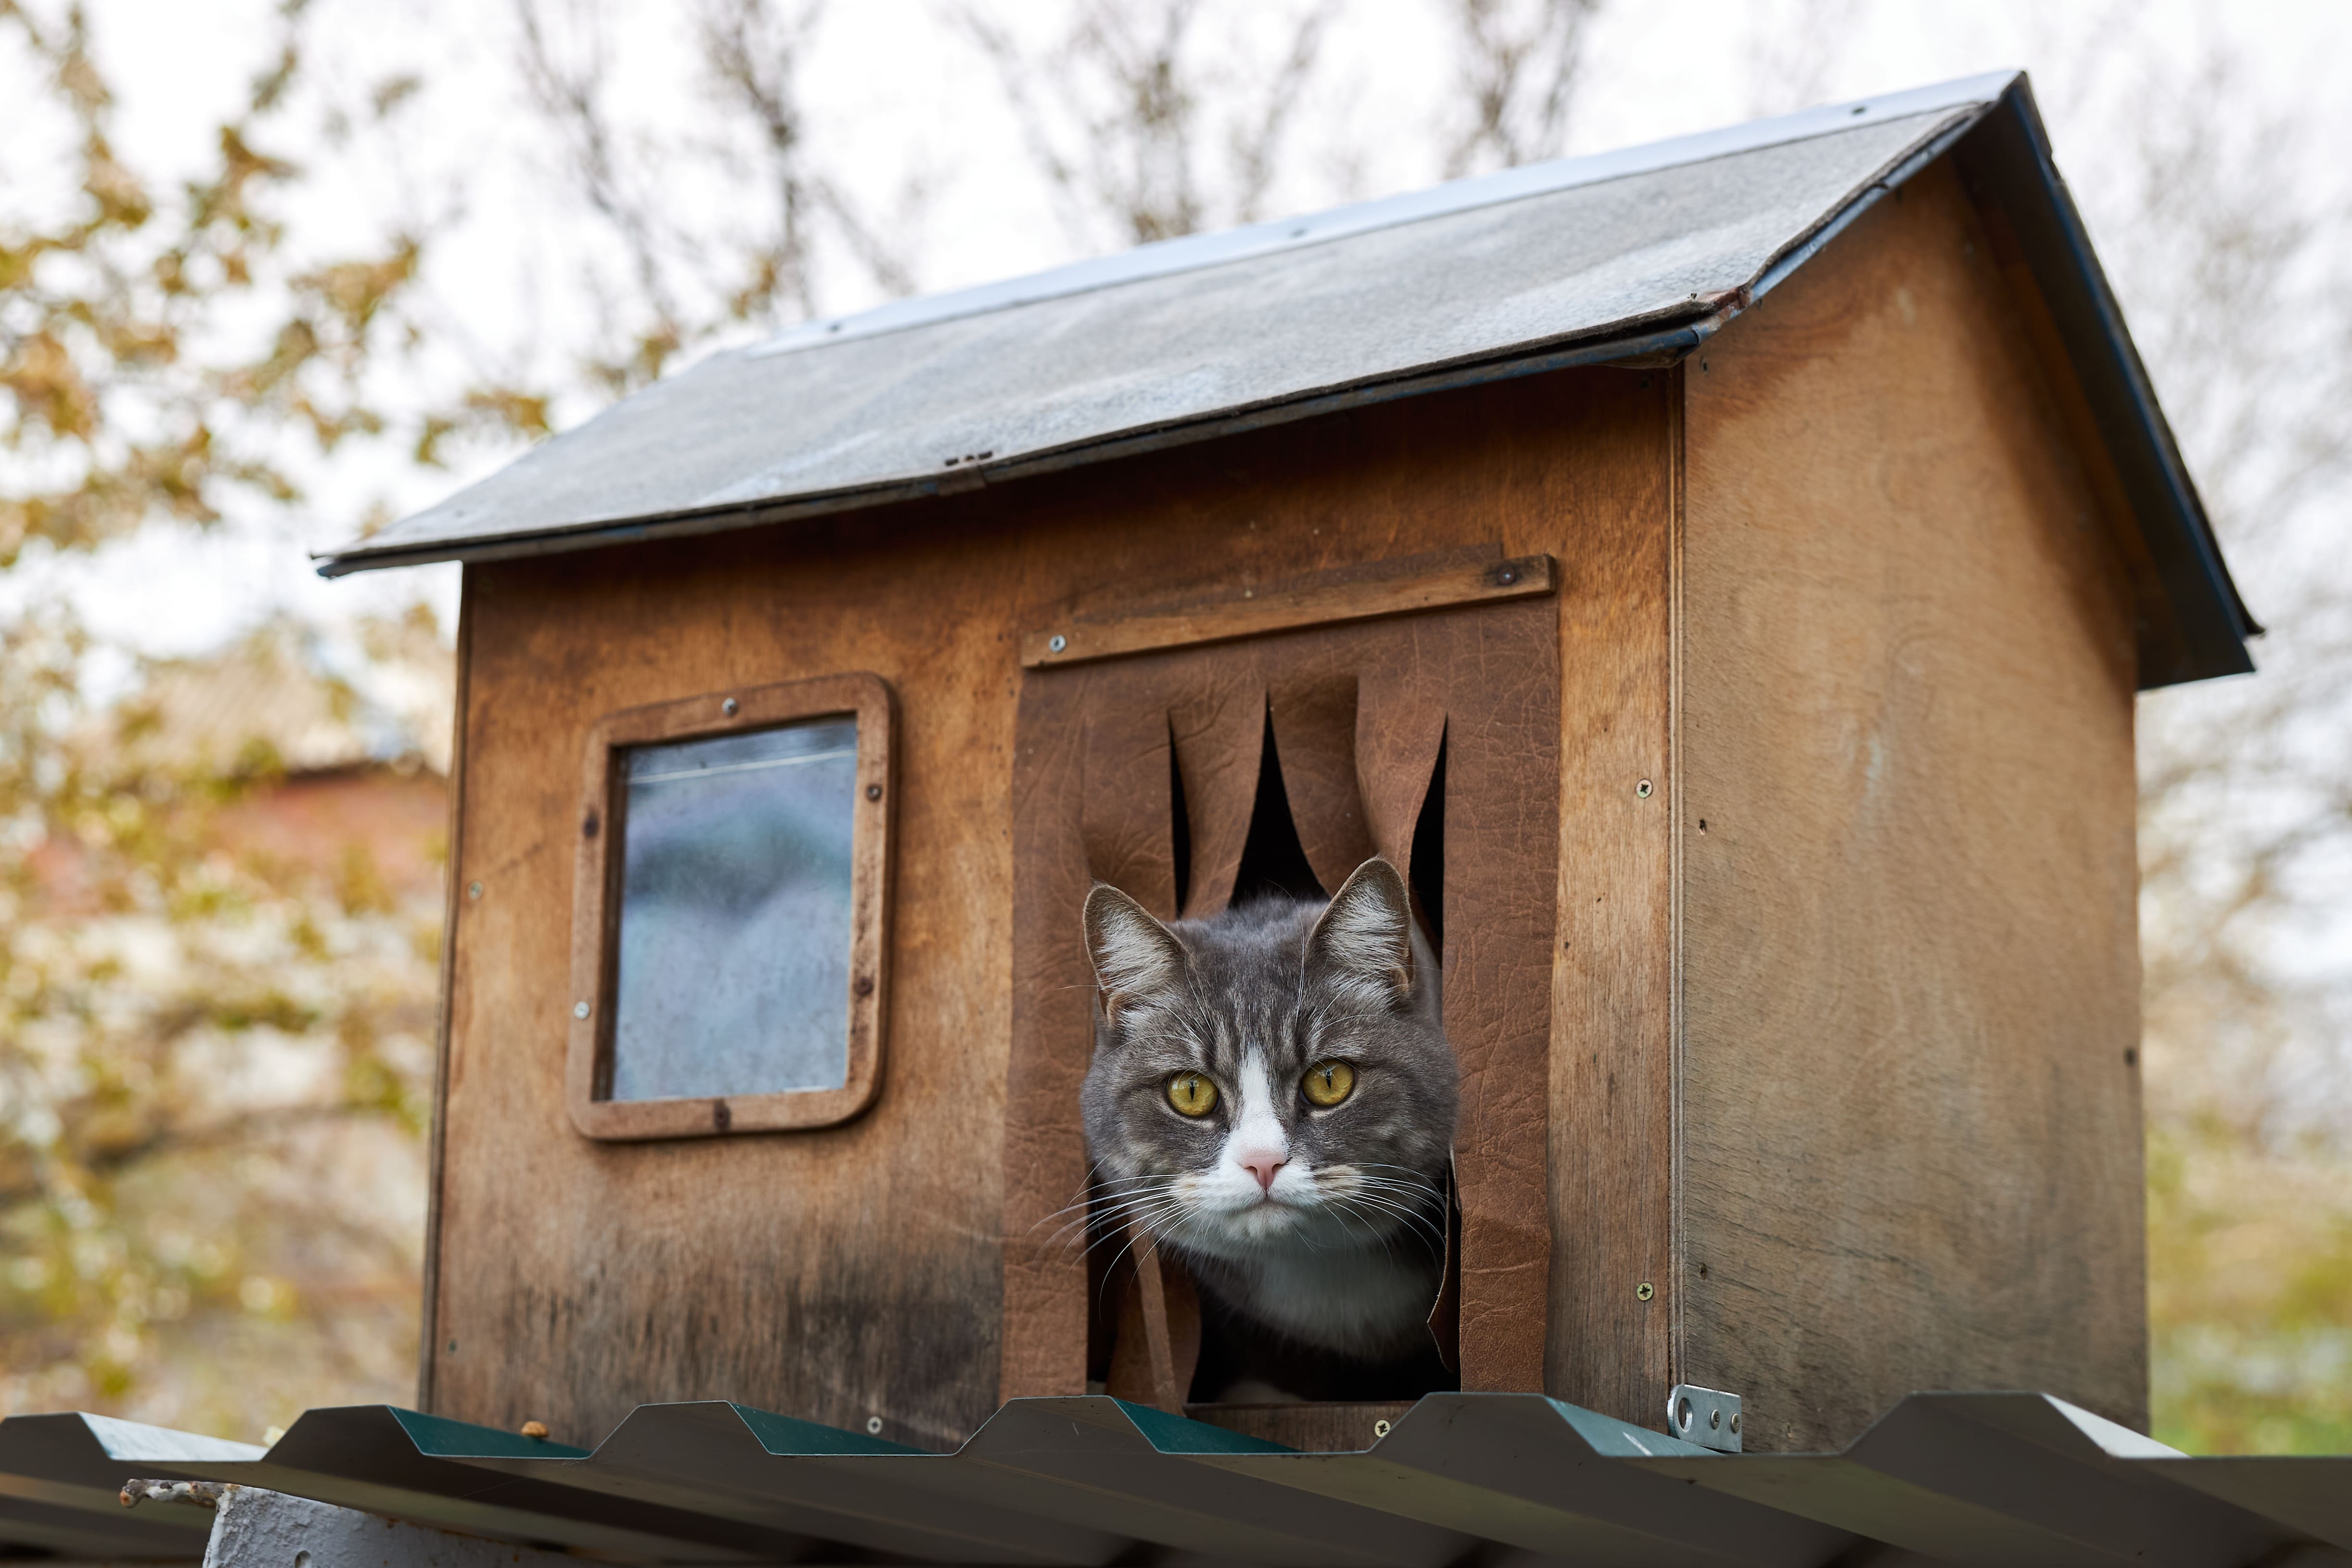 ambitie Beeldhouwer de eerste DIY: een kattenhuis voor zwerfkatten in de winter